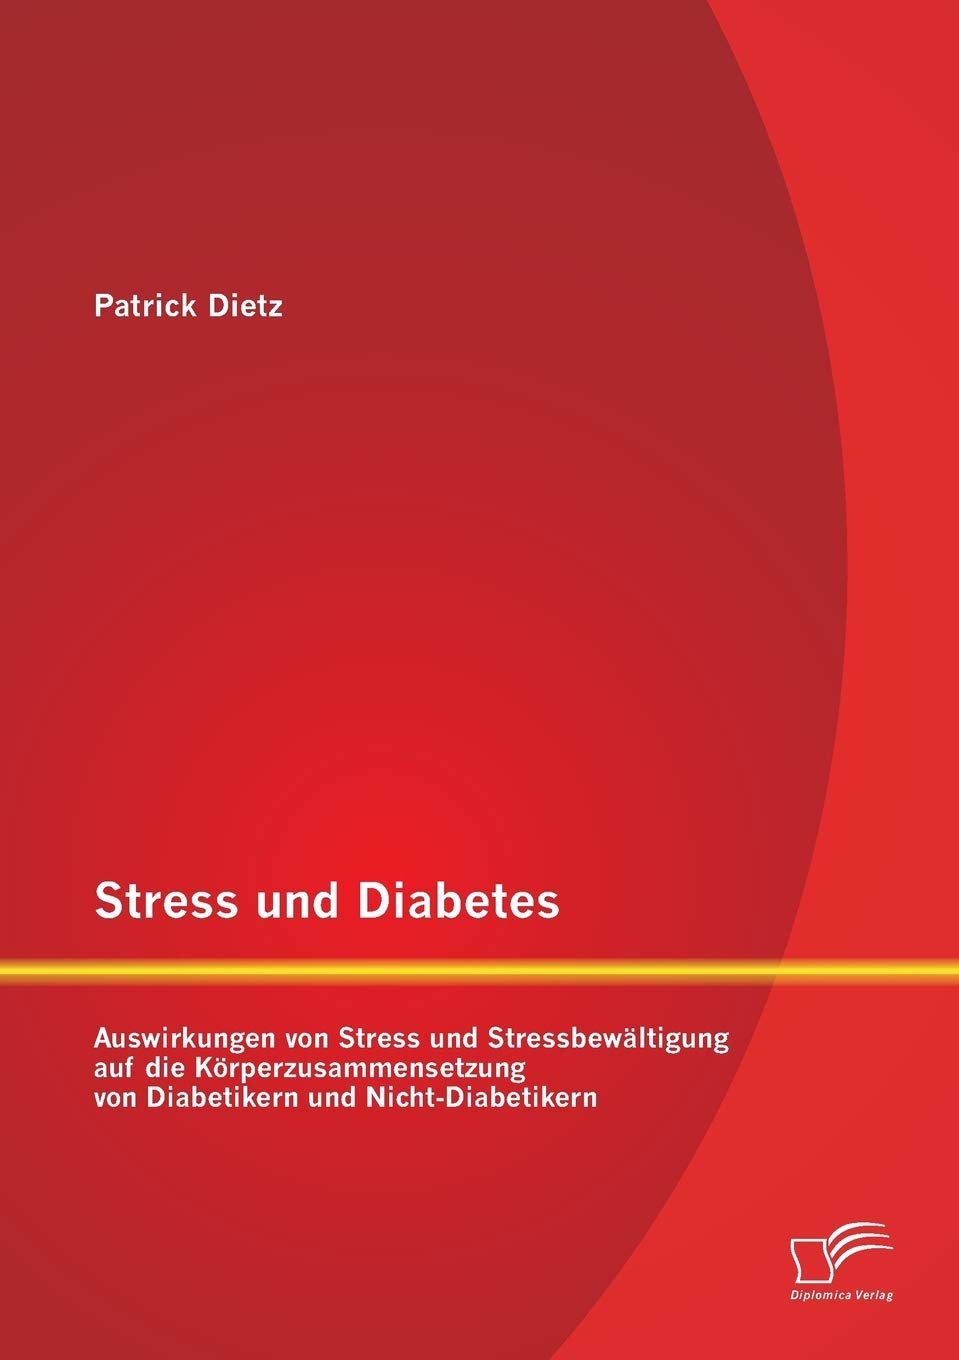 Stress und Diabetes: Auswirkungen von Stress und Stressbewältigung auf die Körperzusammensetzung von Diabetikern und Nicht-Diabe